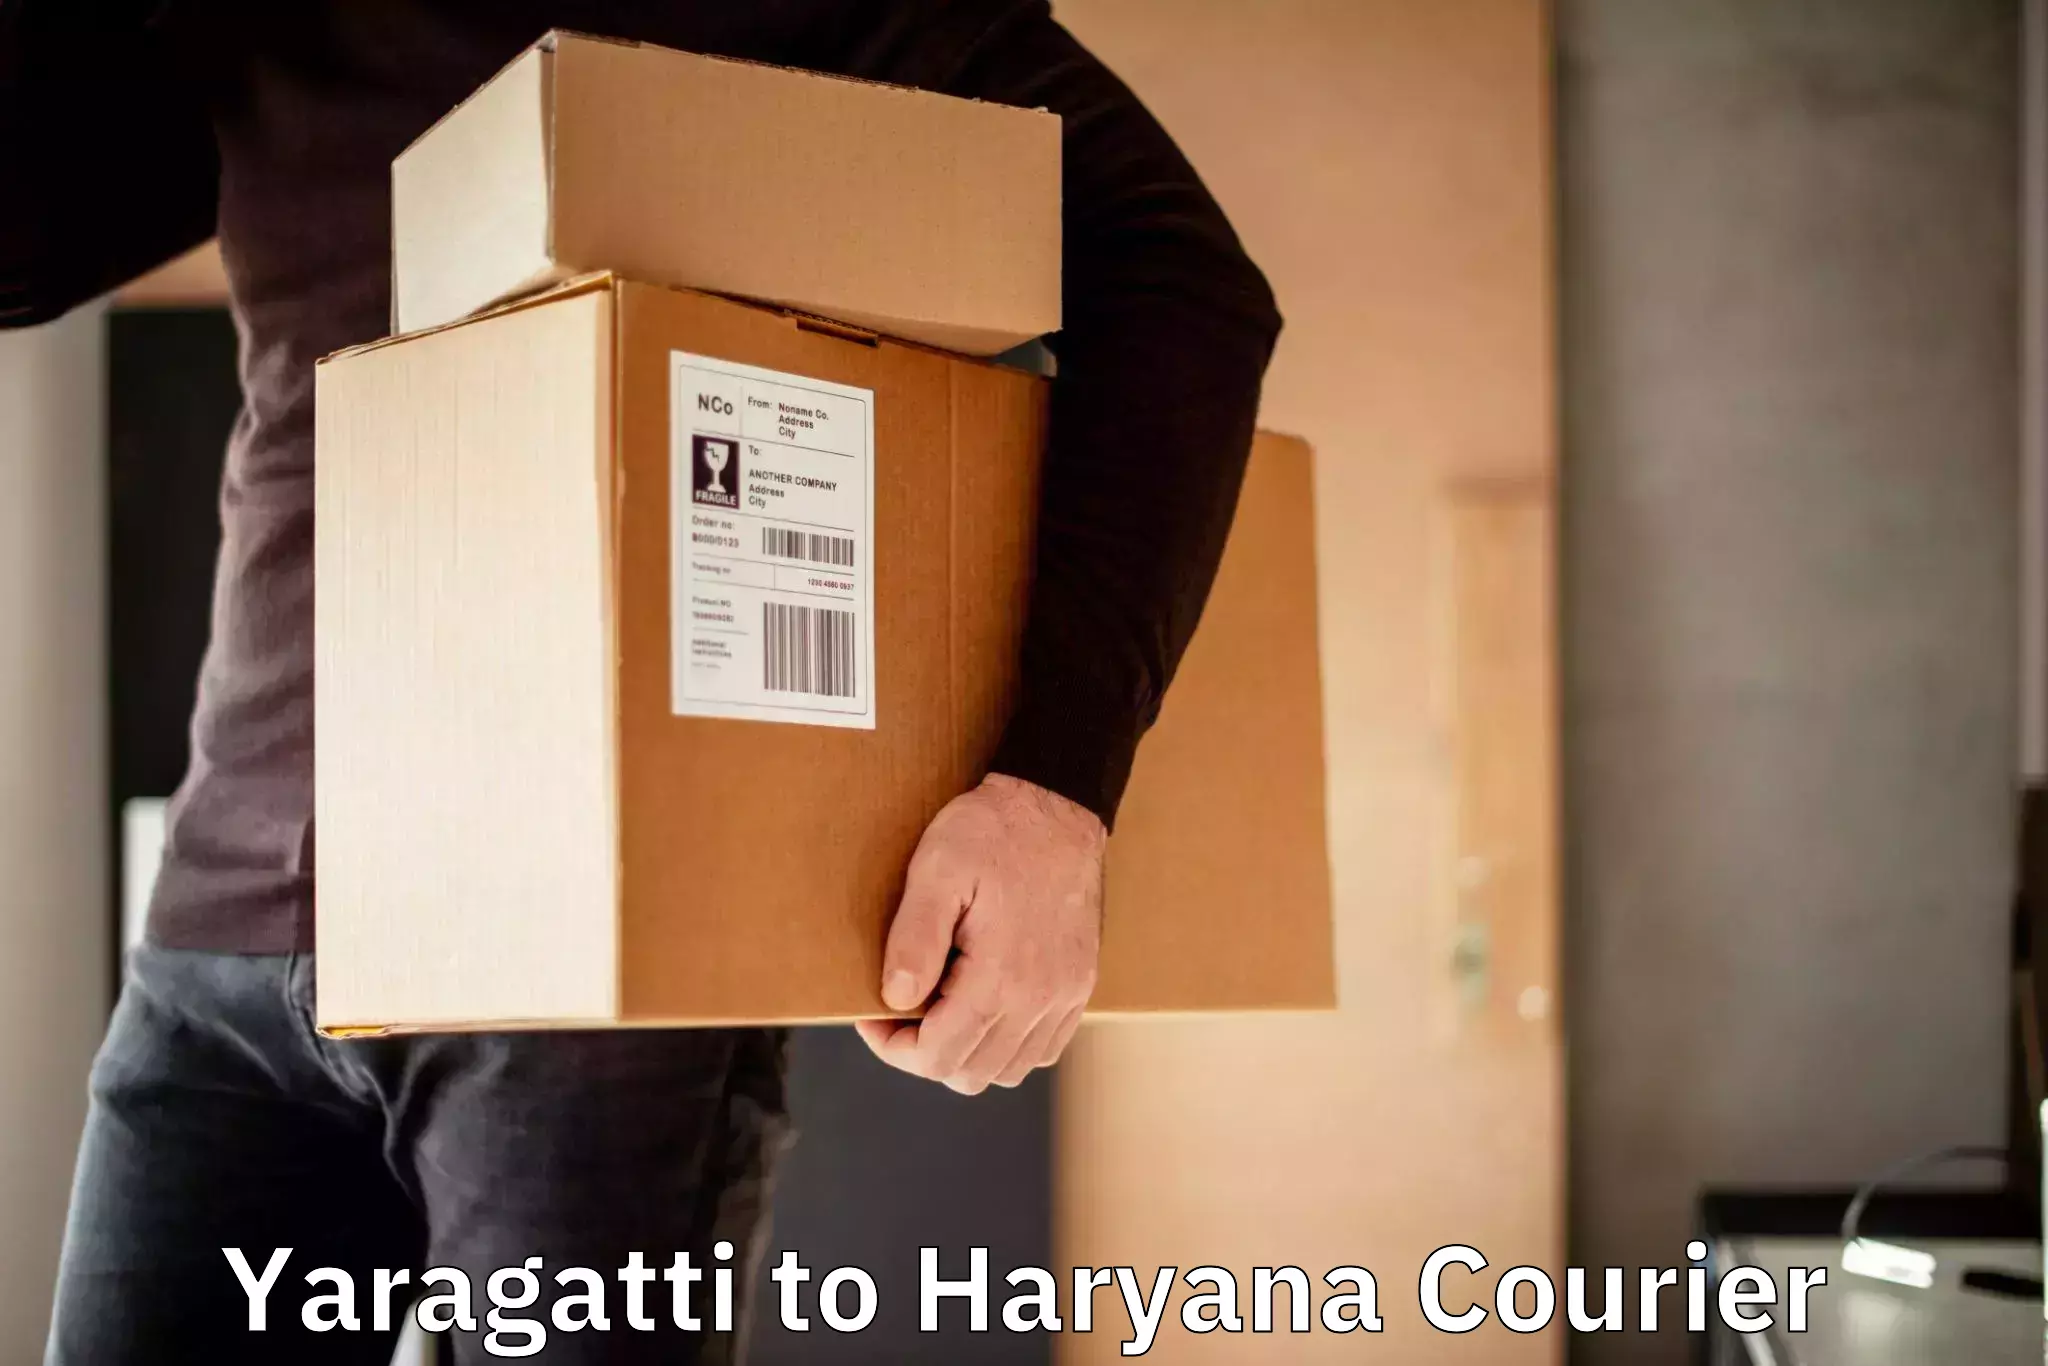 24-hour courier service Yaragatti to Hansi